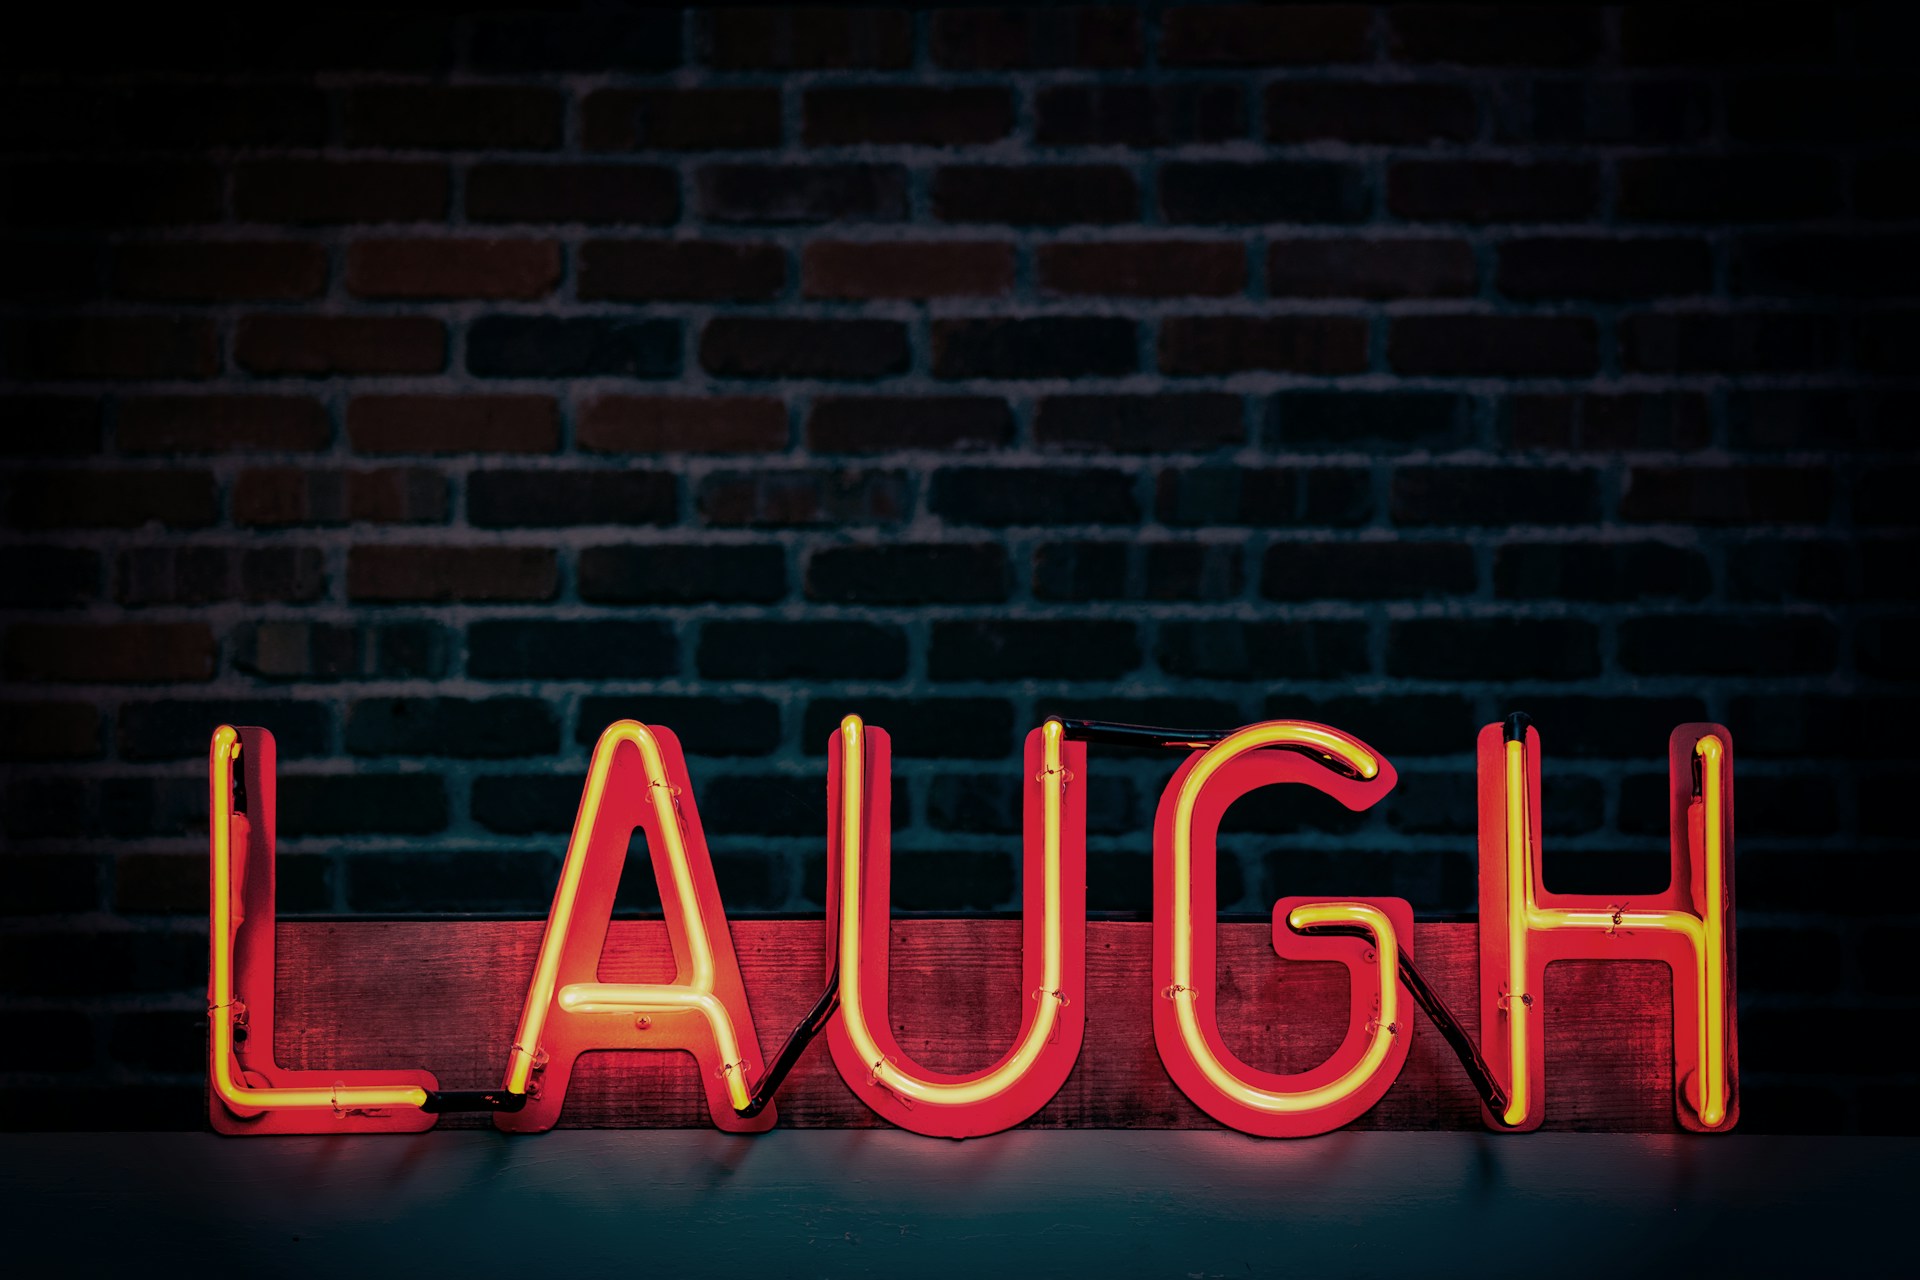 Laugh written in neon